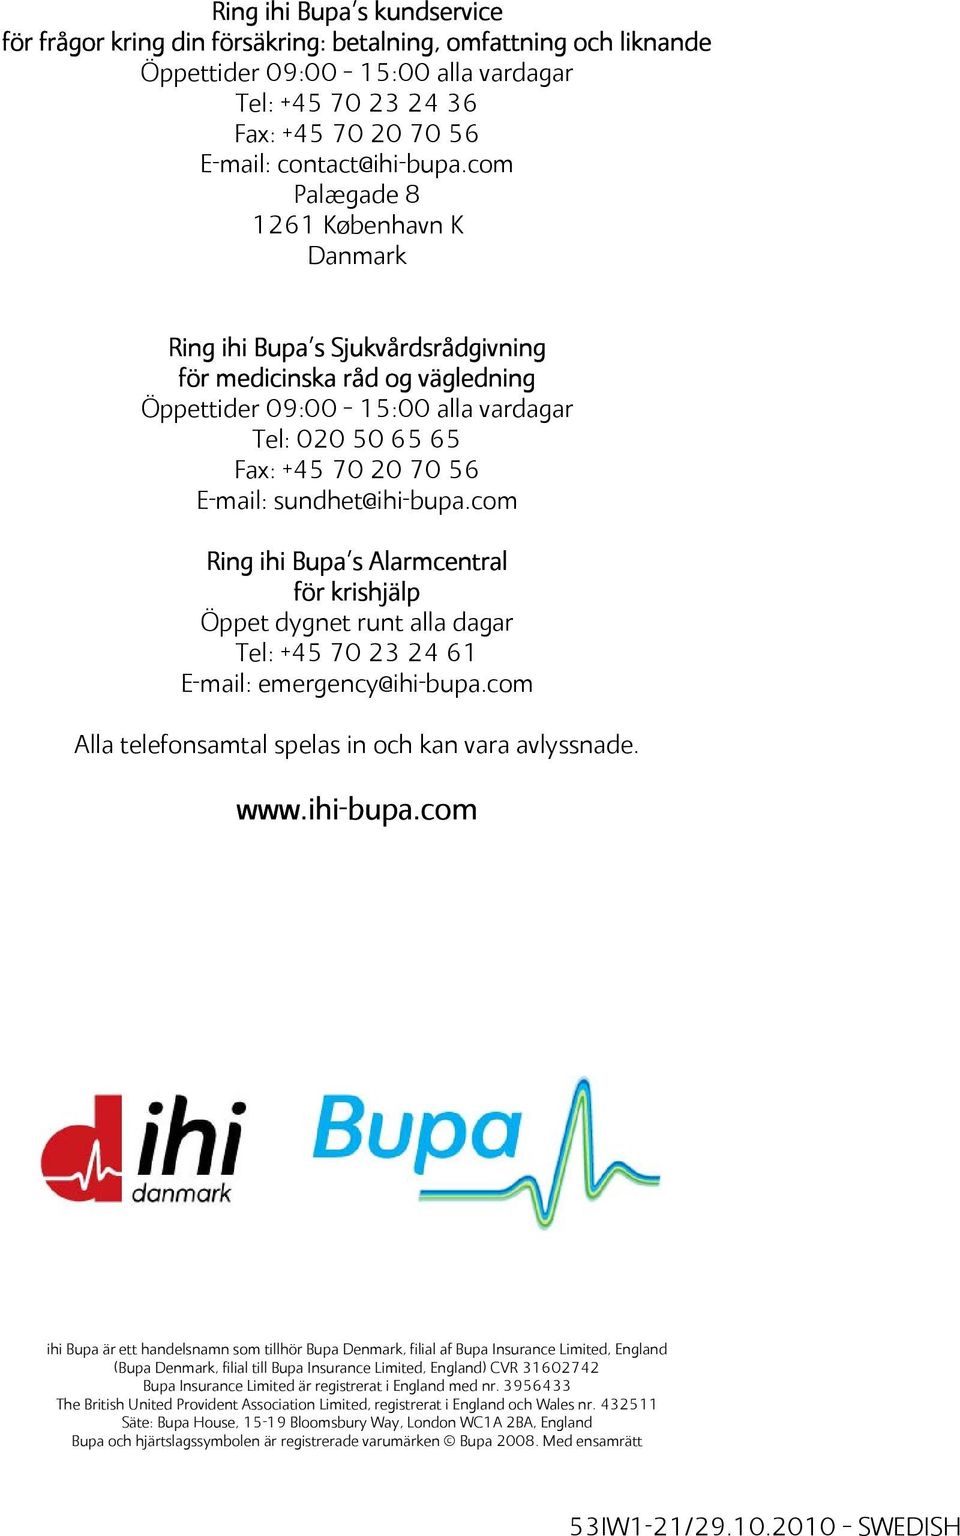 sundhet@ihi-bupa.com Ring ihi Bupa s Alarmcentral för krishjälp Öppet dygnet runt alla dagar Tel: +45 70 23 24 61 E-mail: emergency@ihi-bupa.com Alla telefonsamtal spelas in och kan vara avlyssnade.